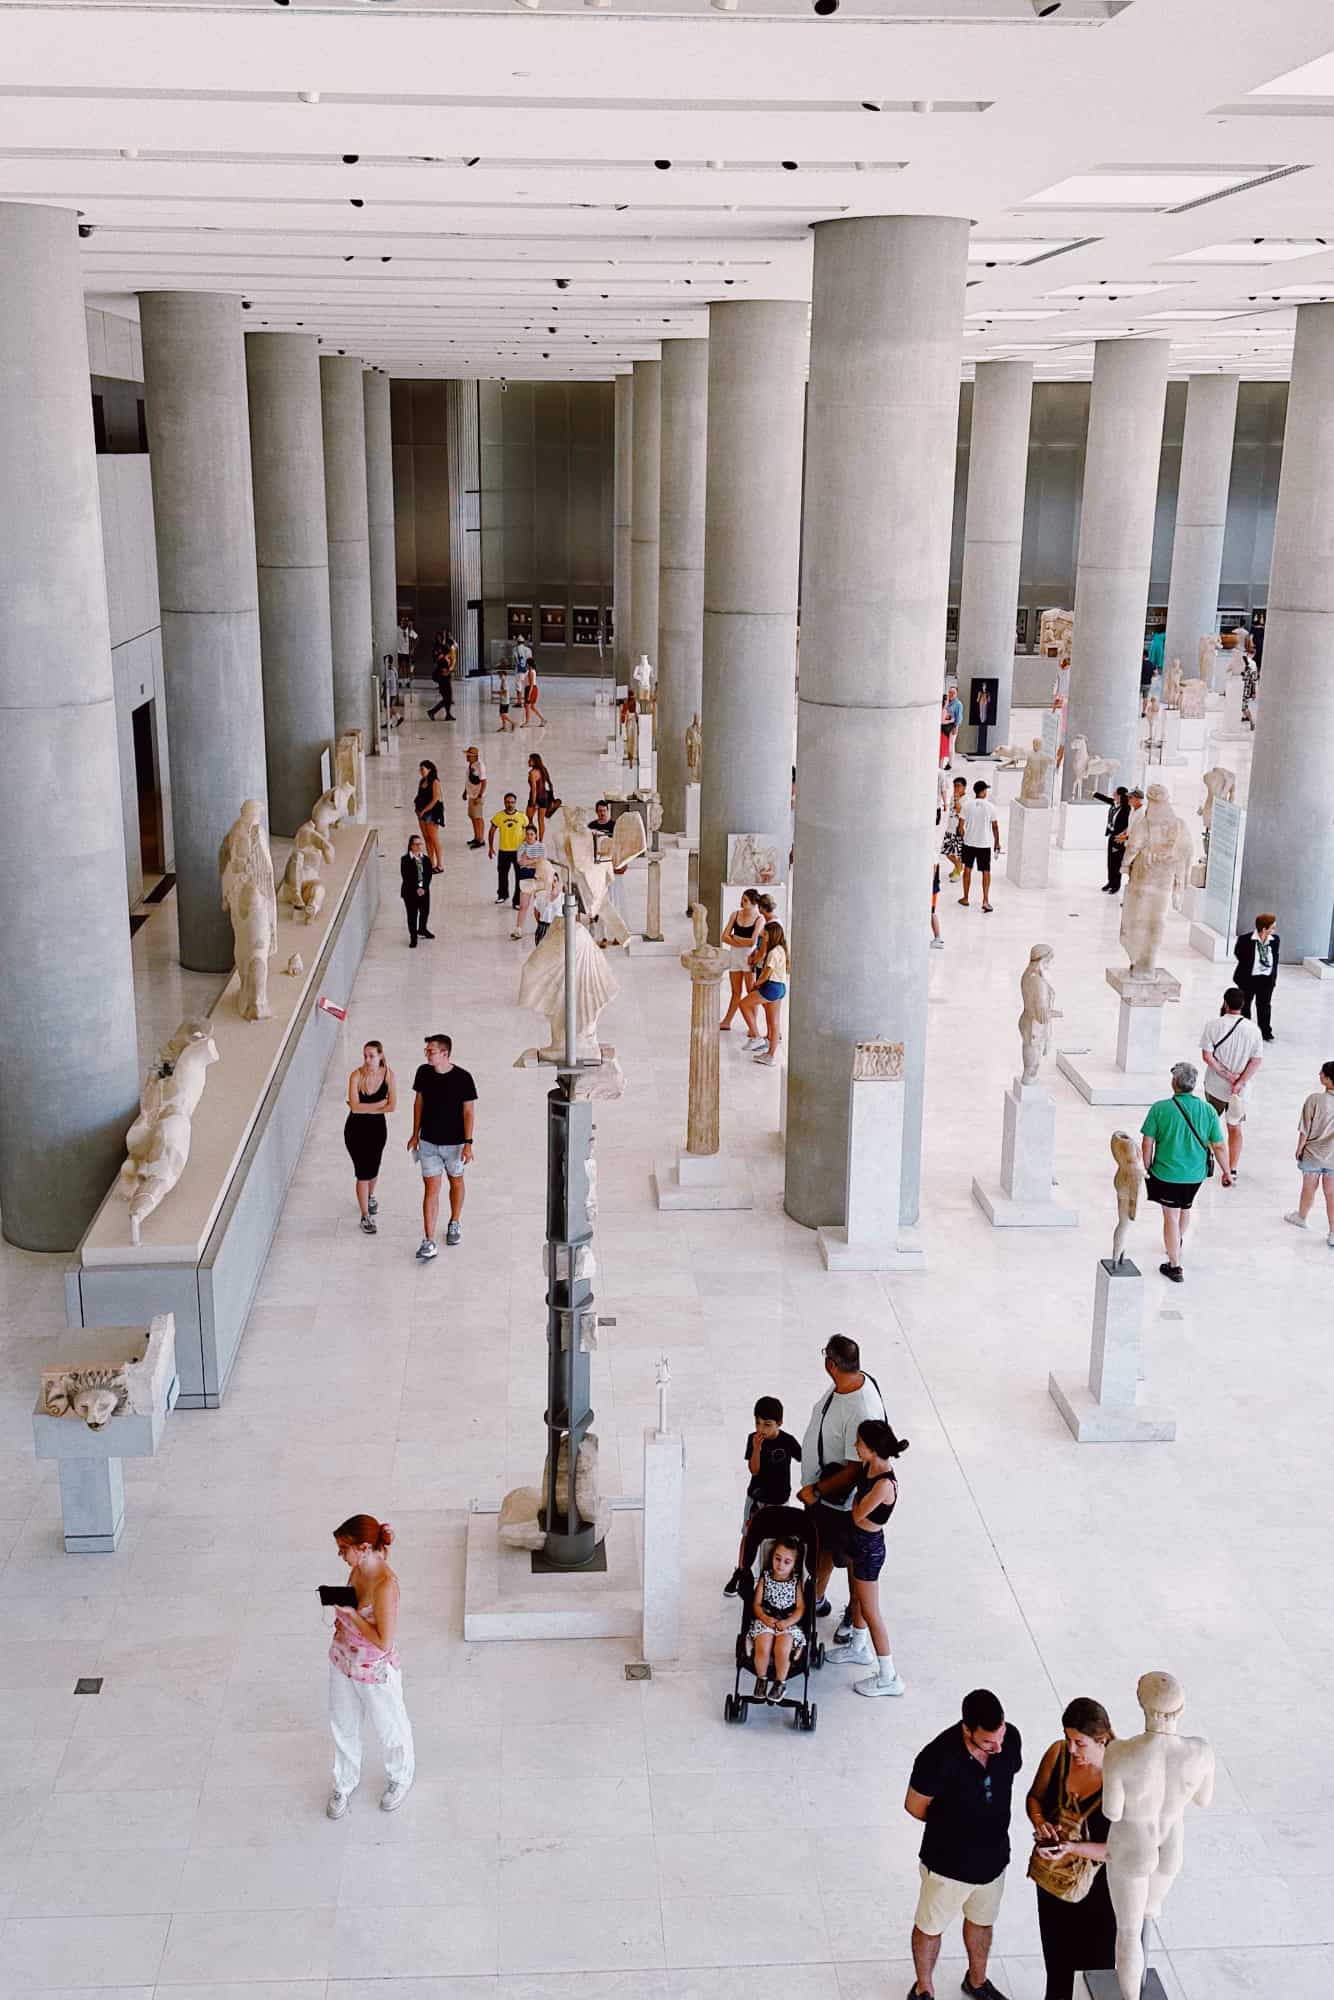 Museumshalle mit Besuchern, die antike Statuen und Kunstwerke betrachten, zeigt das Interesse an kreativen und historischen Inspirationen